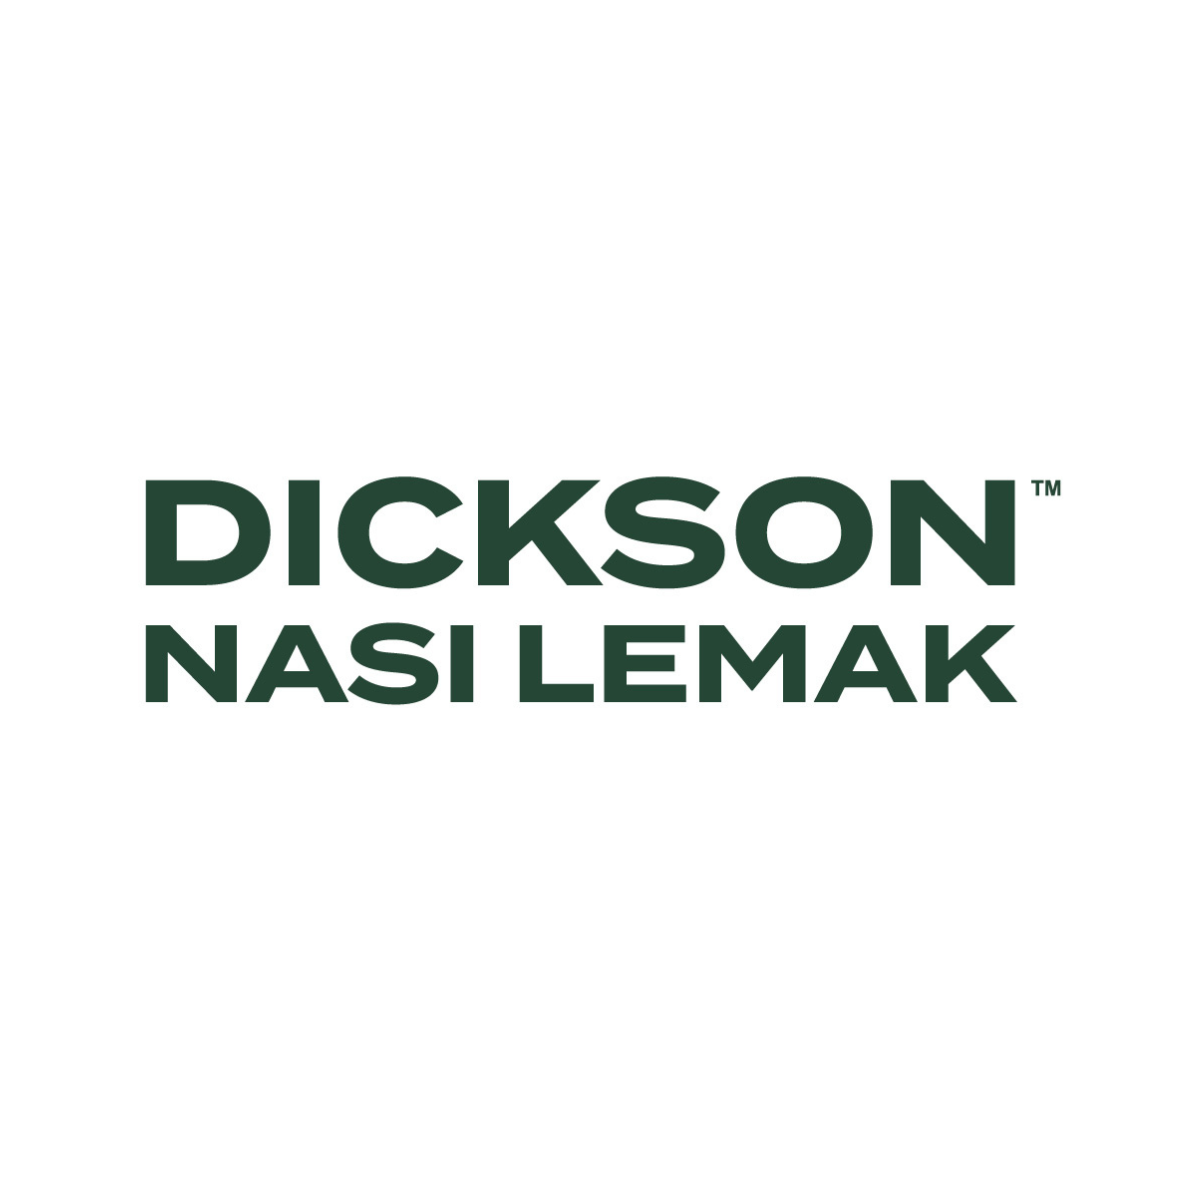 Dickson Nasi Lemak